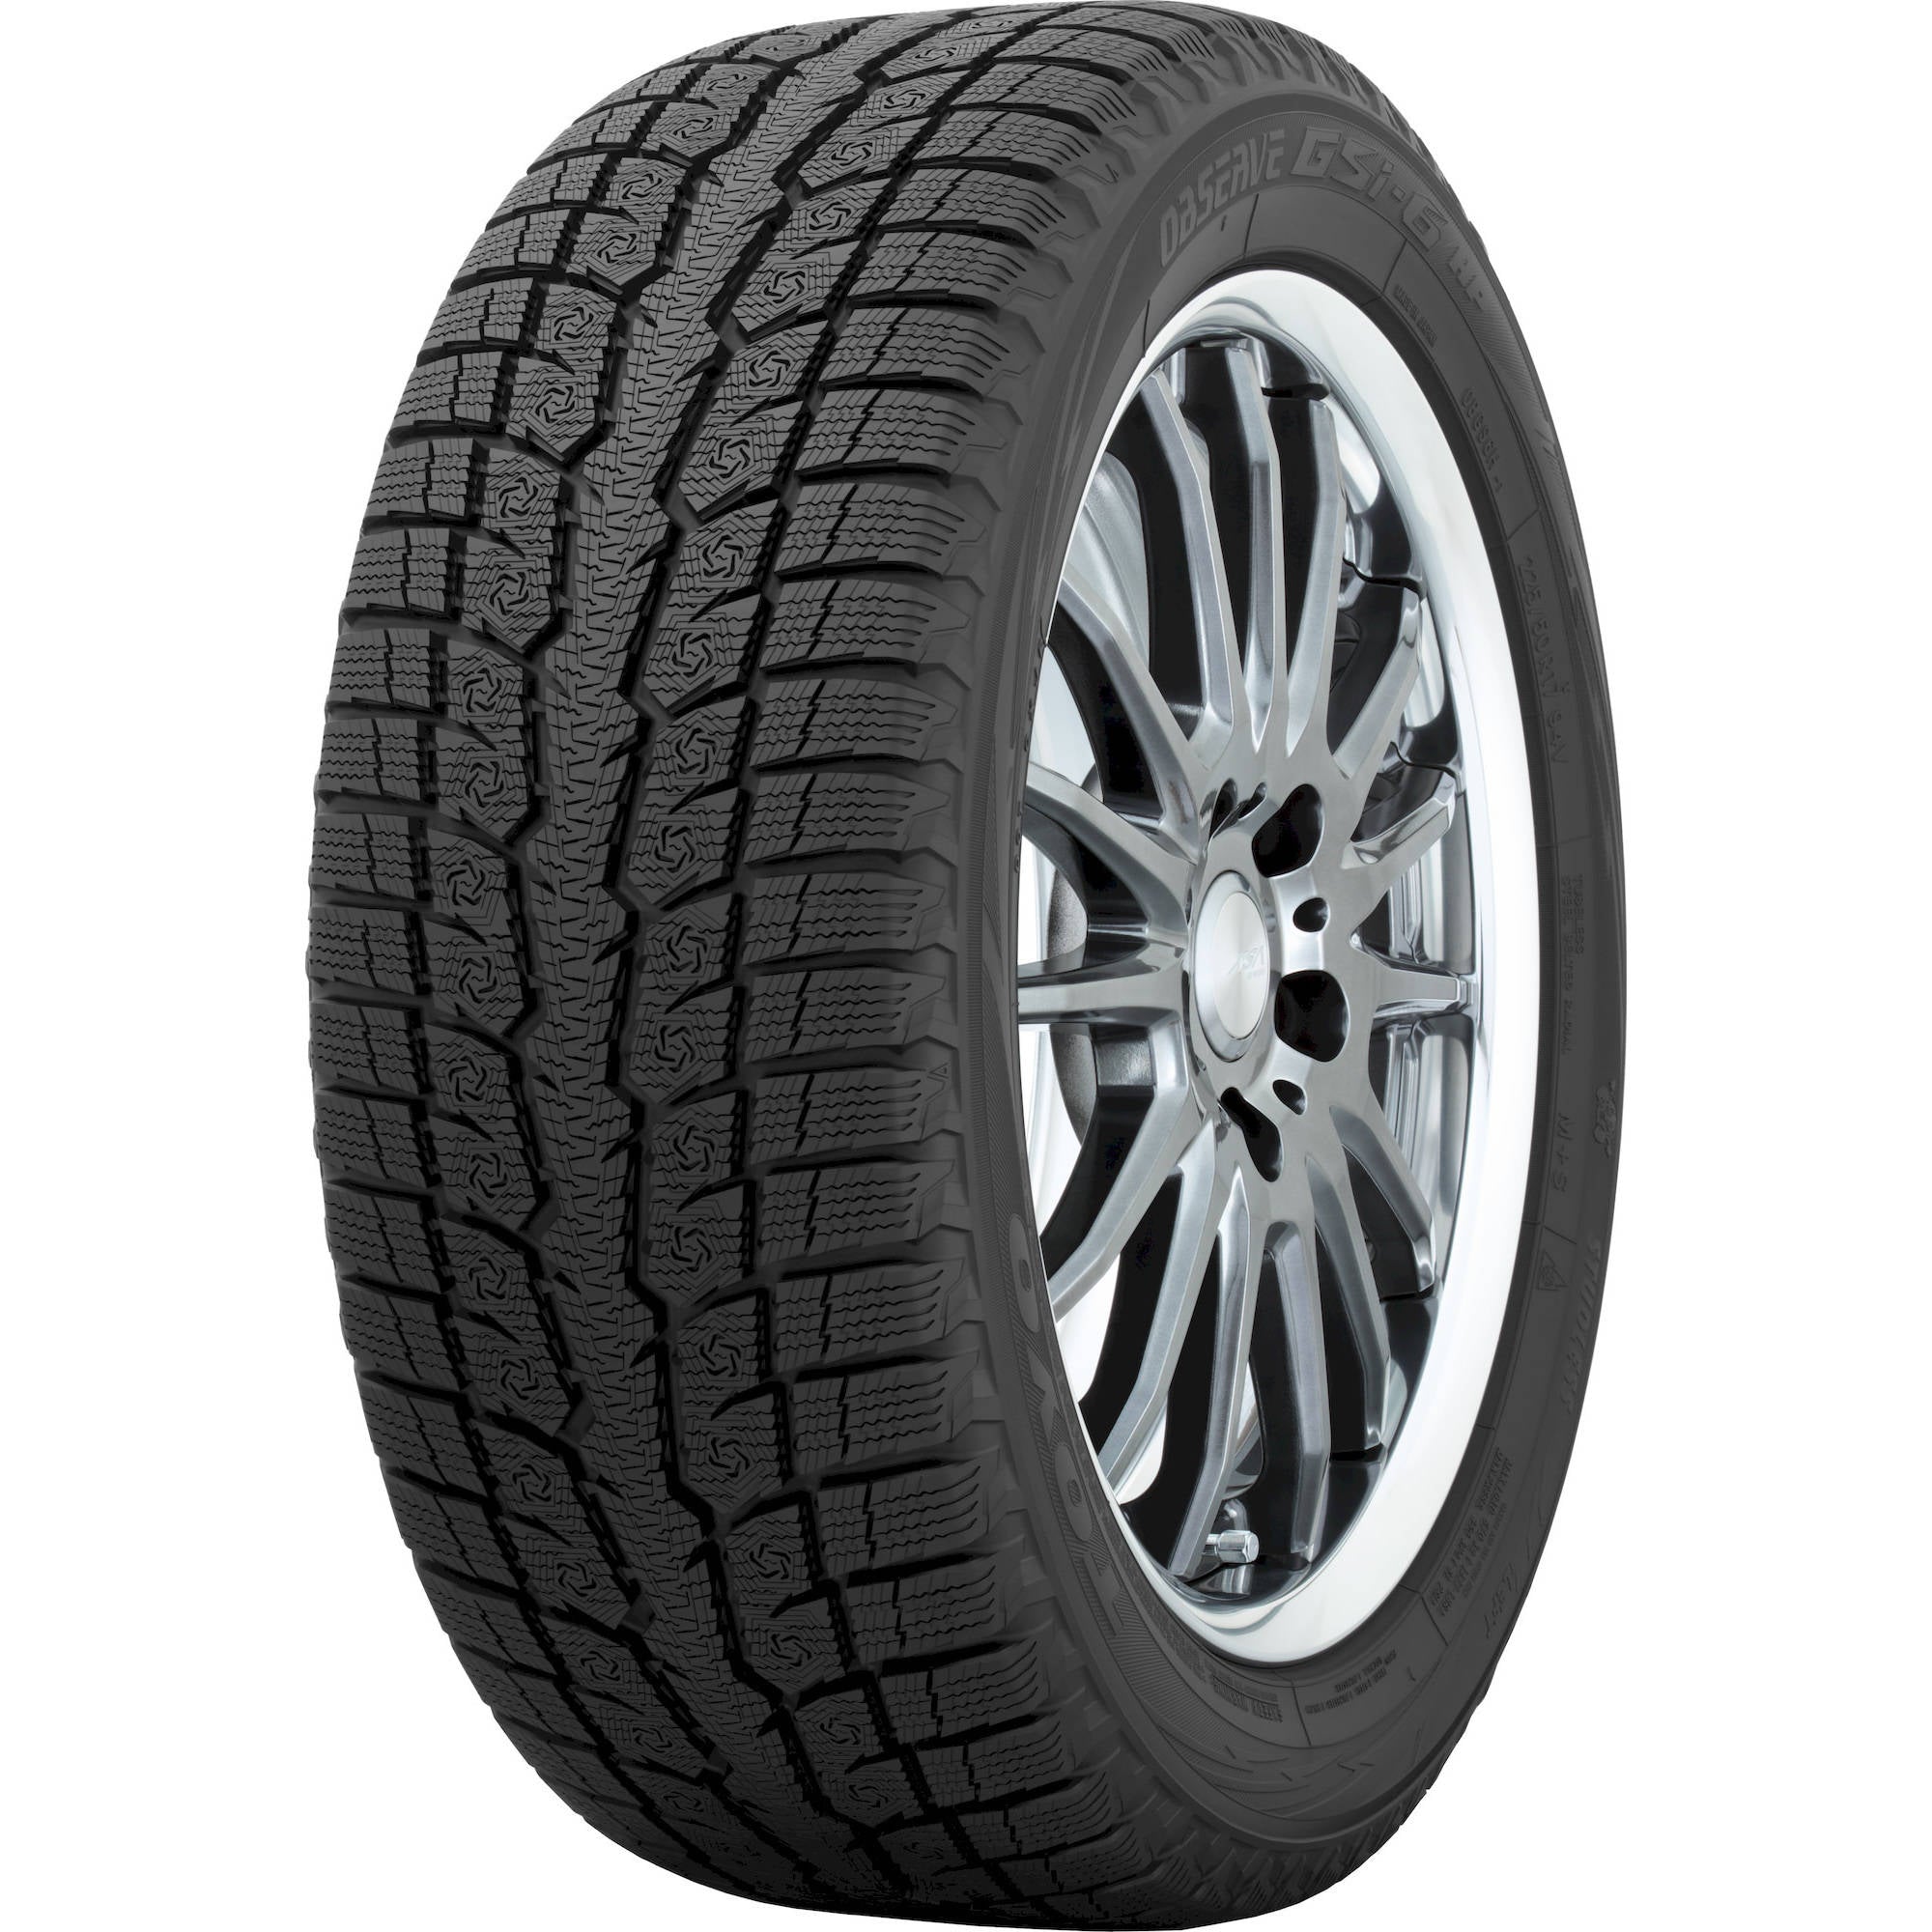 TOYO TIRES OBSERVE GSI-6 185/65R15 (24.5X7.3R 15) Tires